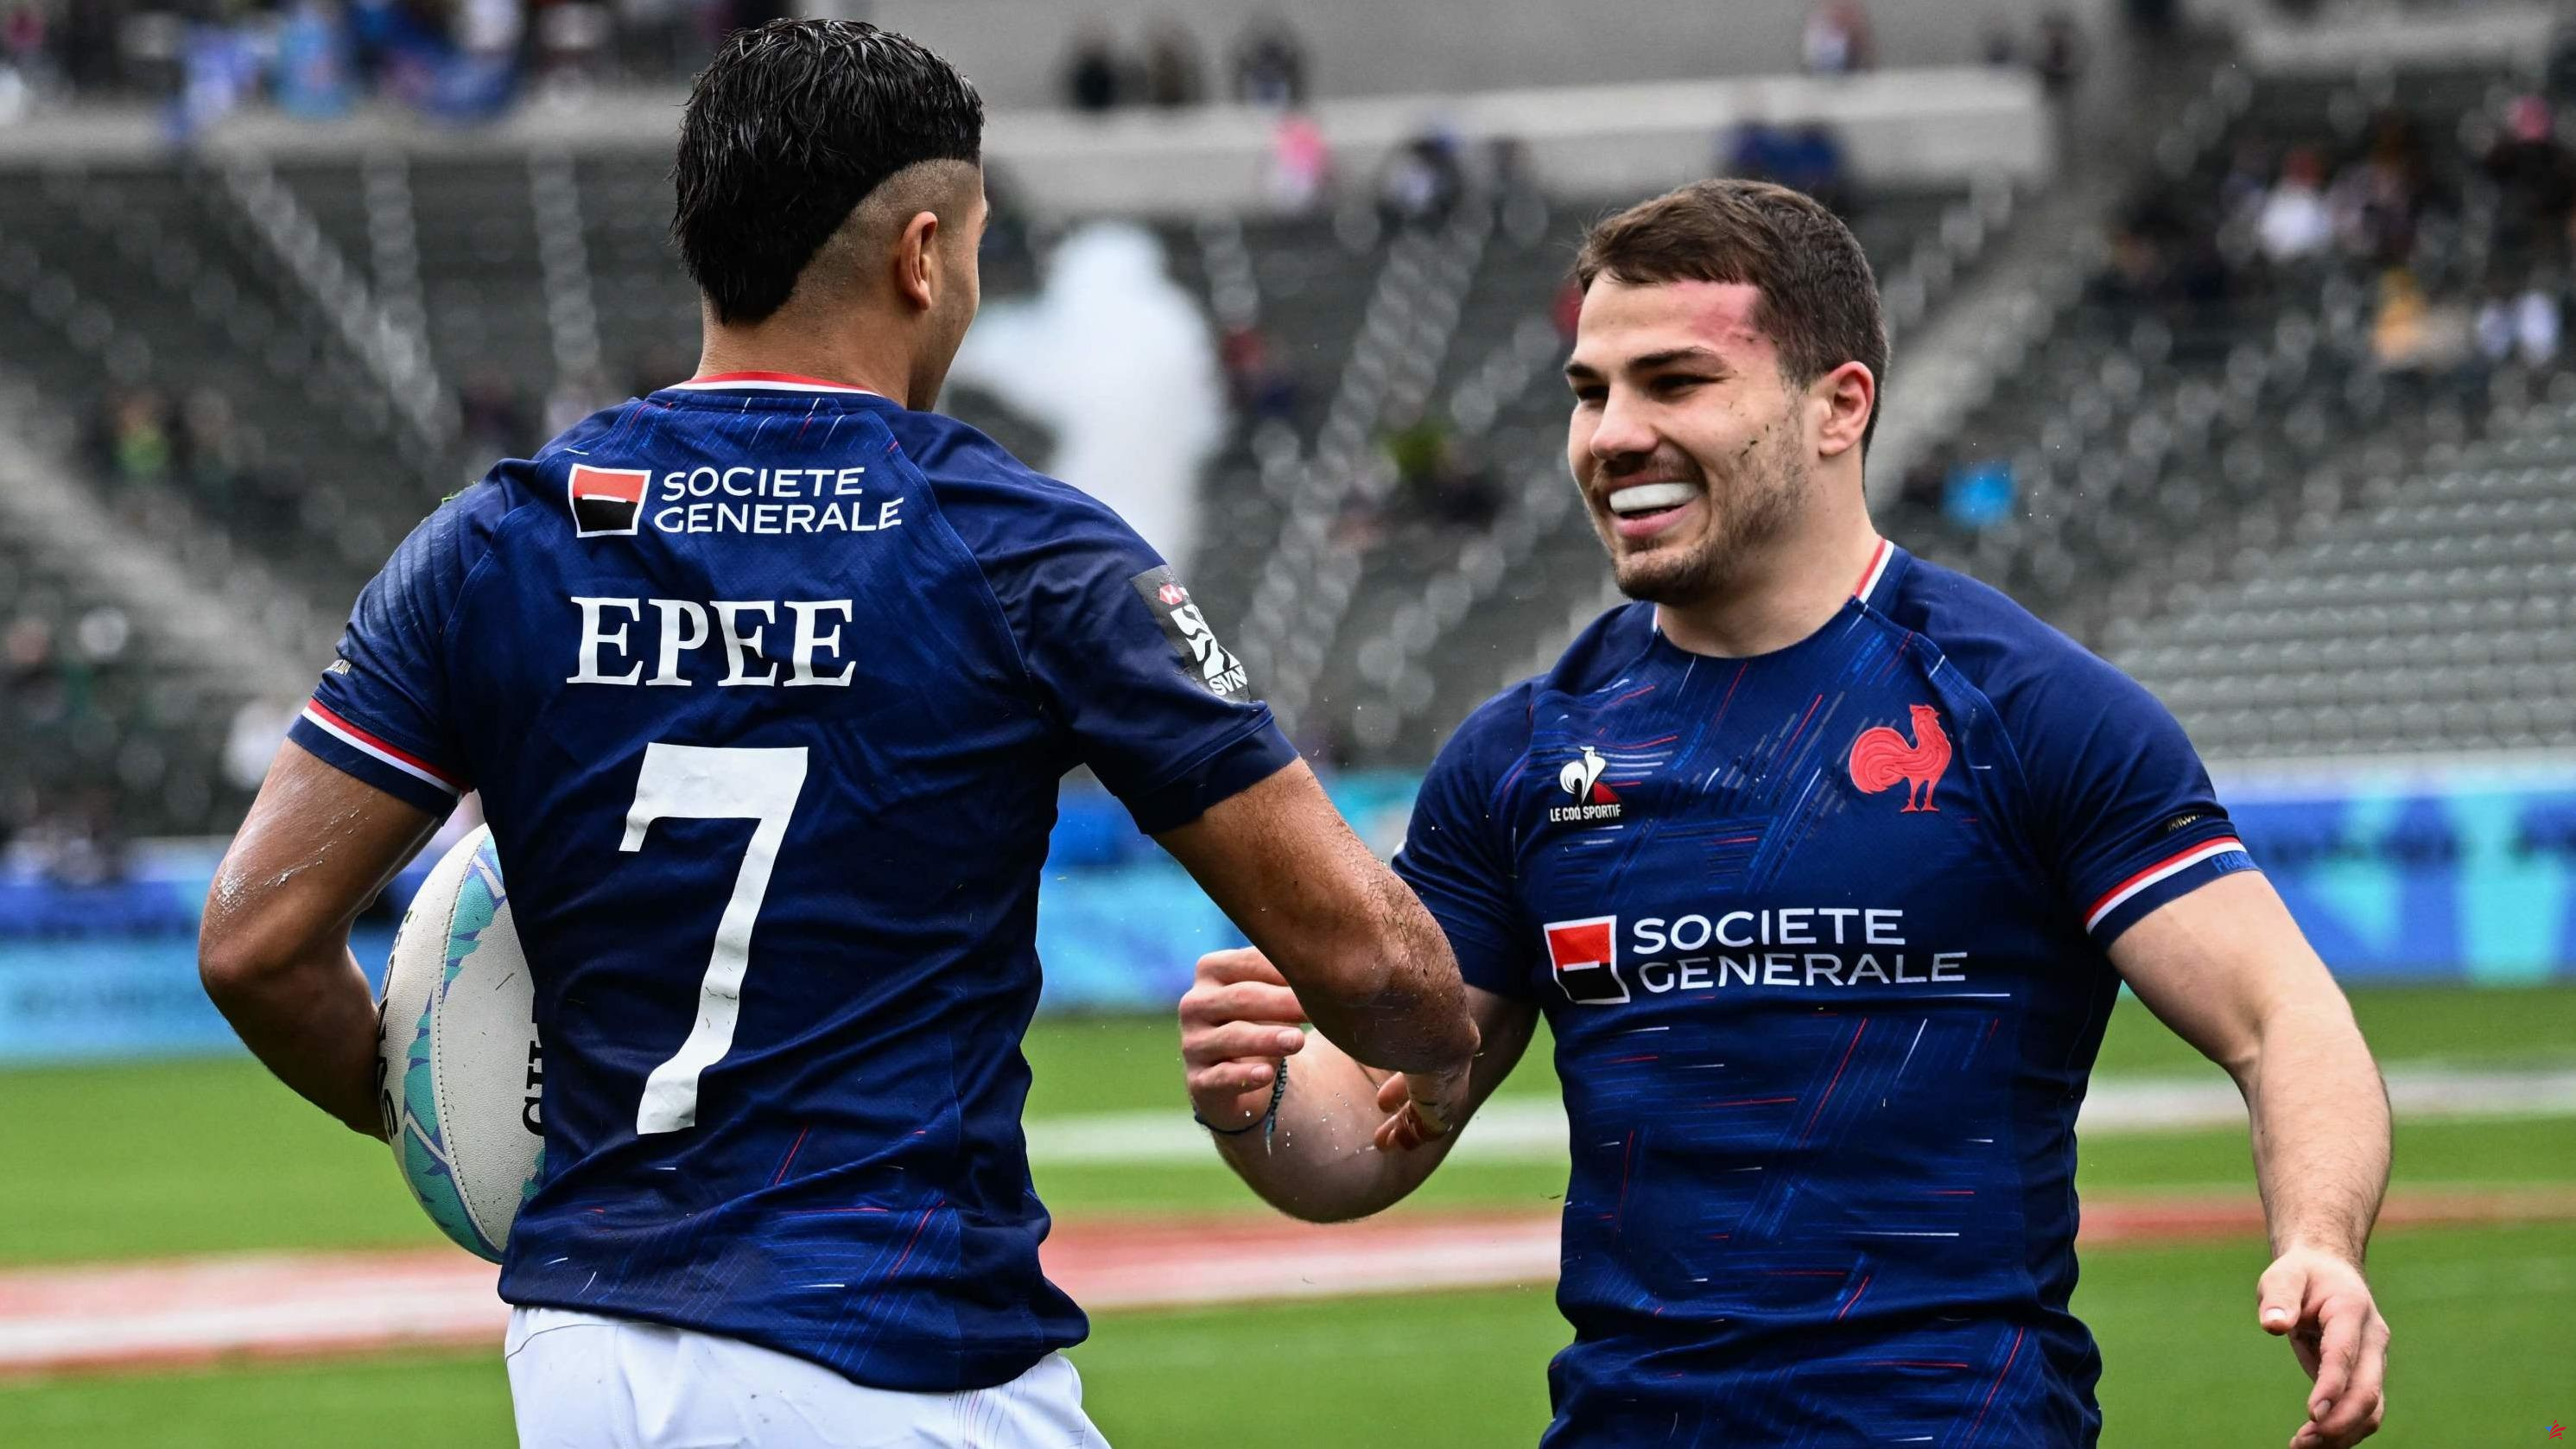 Rugby 7s: “No sabía realmente hacia dónde iba”, dice Antoine Dupont tras su exitoso debut